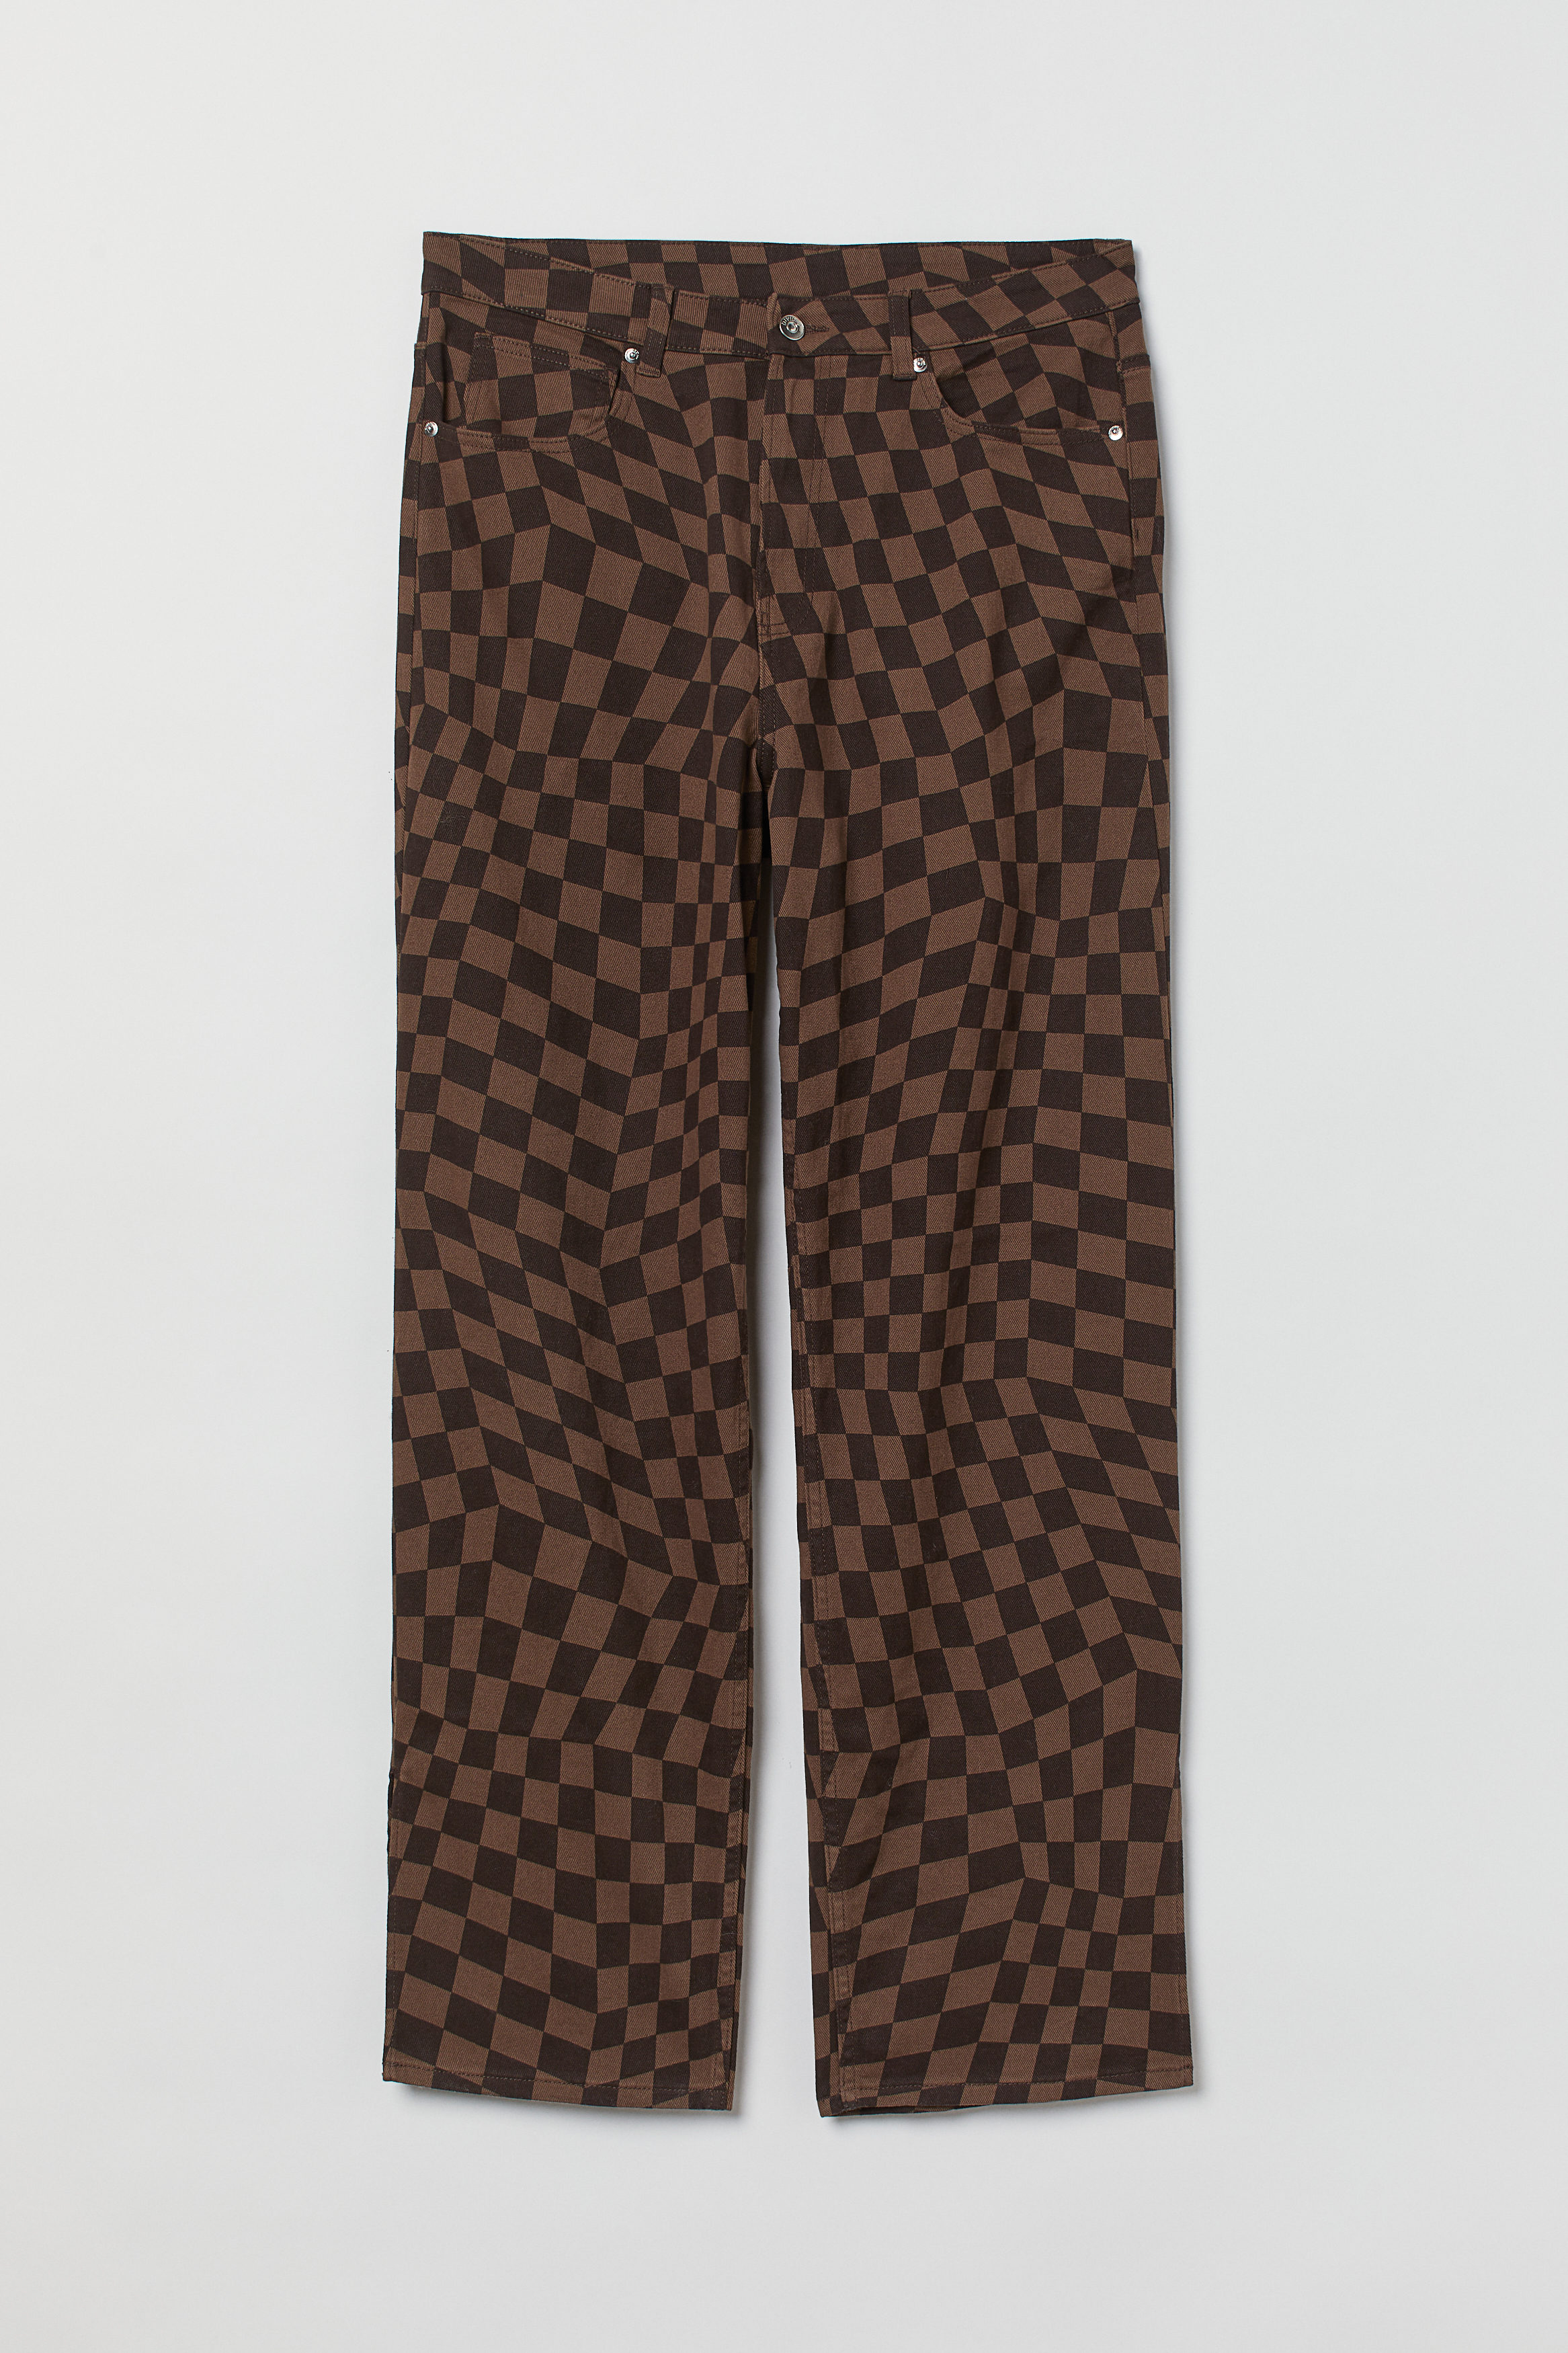 Billede af H&m+ 90s Straight High Waist Jeans Mørkebrun/sortternet, jeans. Farve: Dark brown/black checked I størrelse 4XL